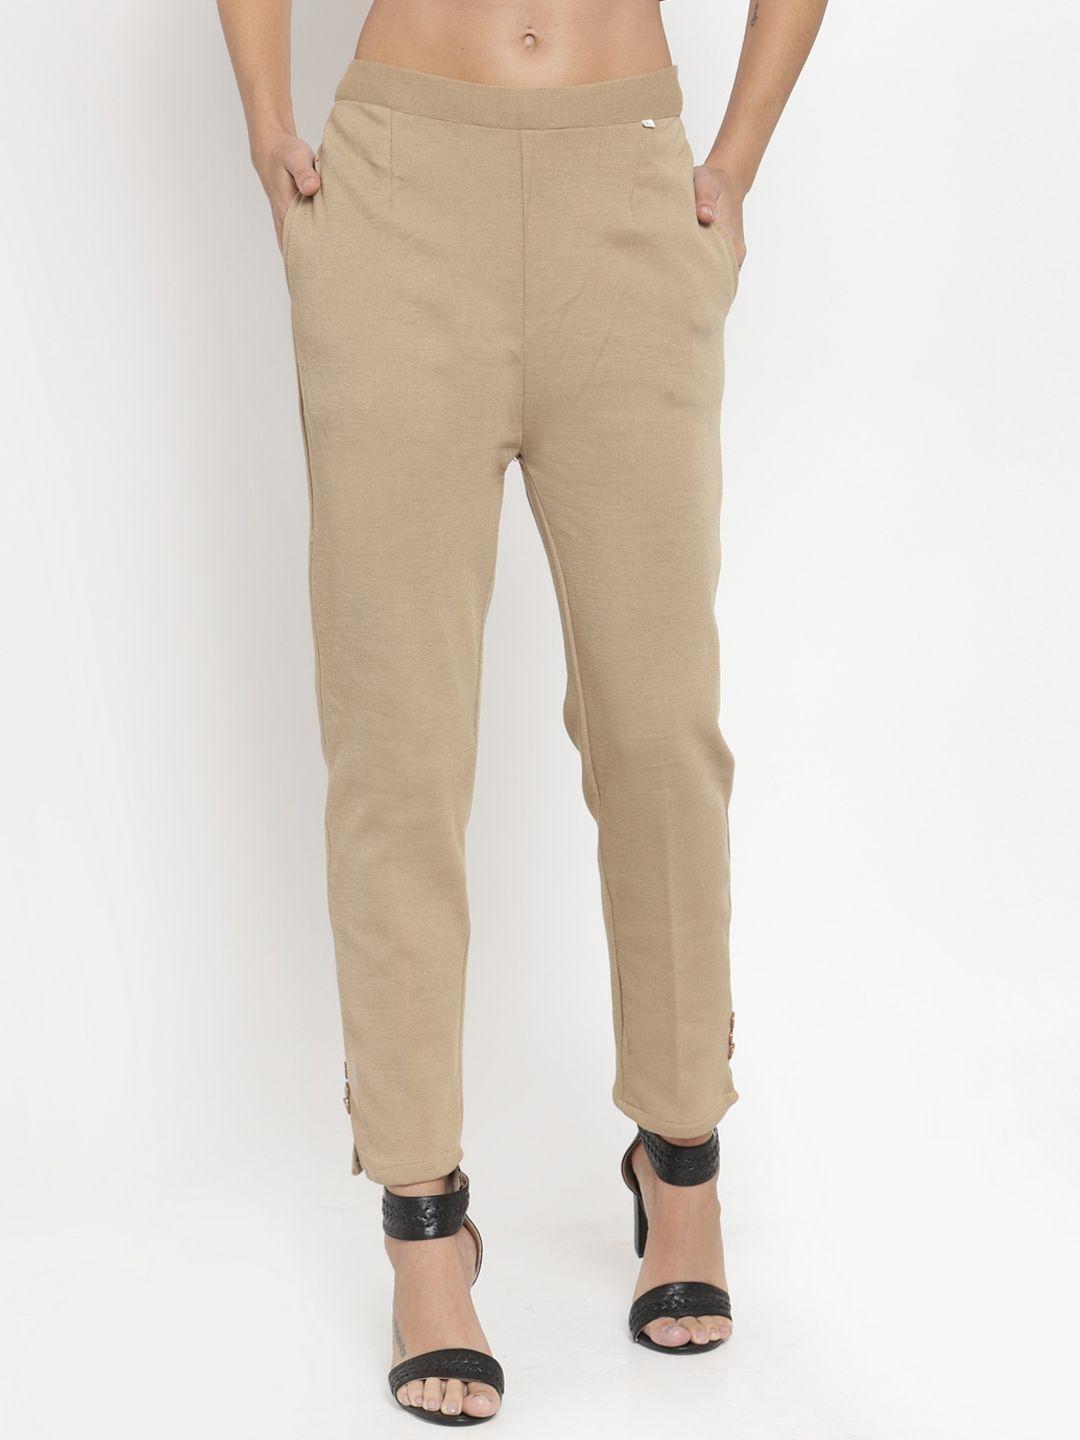 clora-creation-women-beige-smart-easy-wash-woolen-winter-trousers